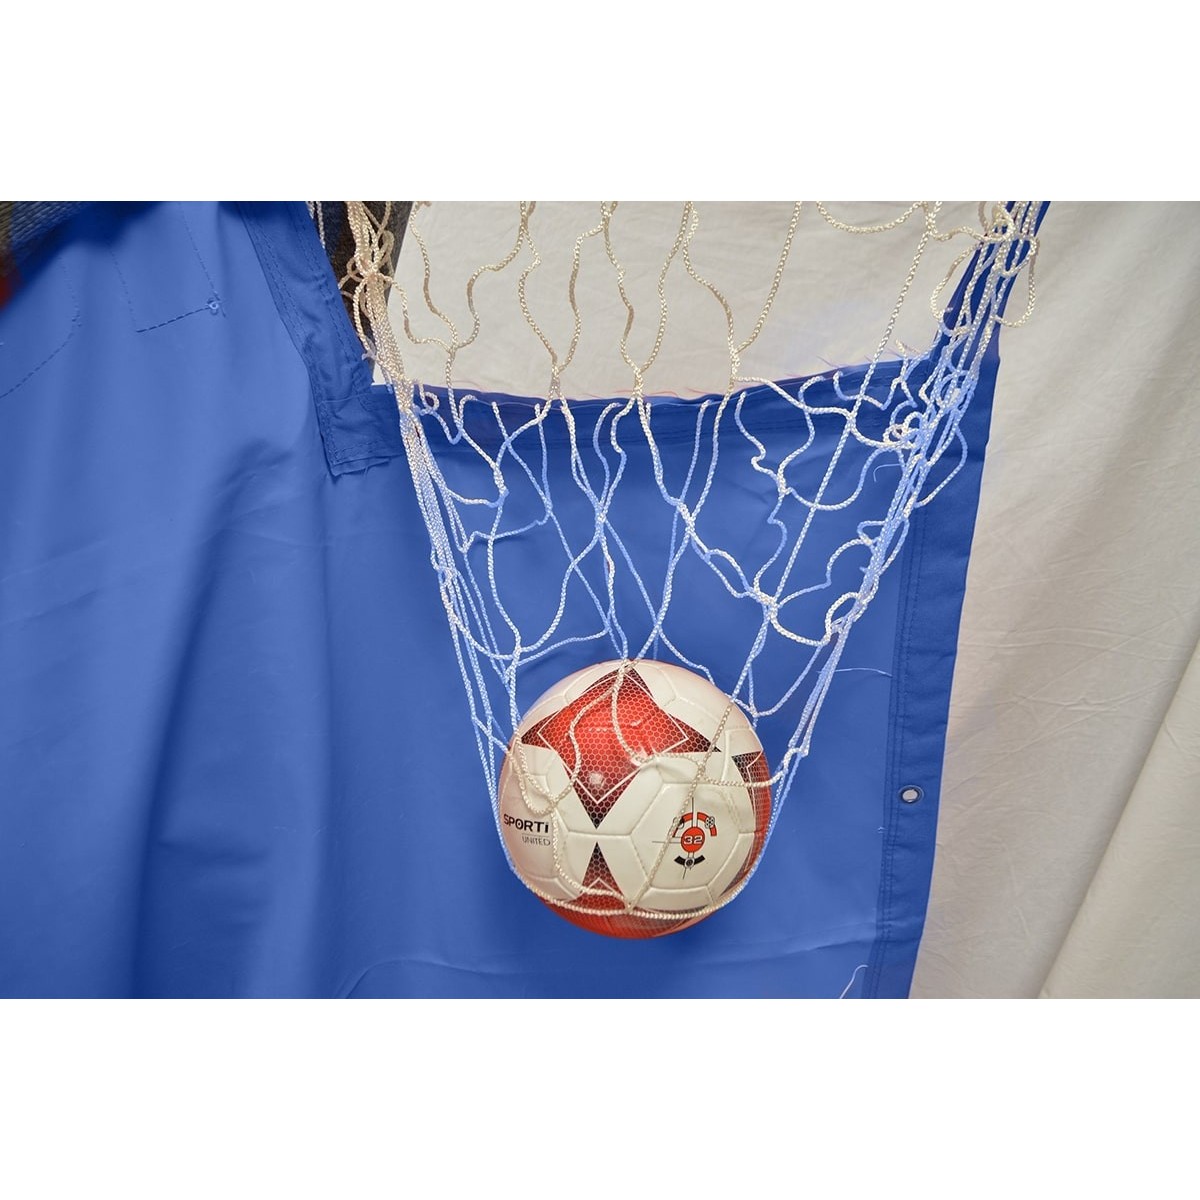 Cible de but de handball - 2 - Cible pour but de handball en nylon pour le travail de la précision.
Comporte 4 cibles numérotée